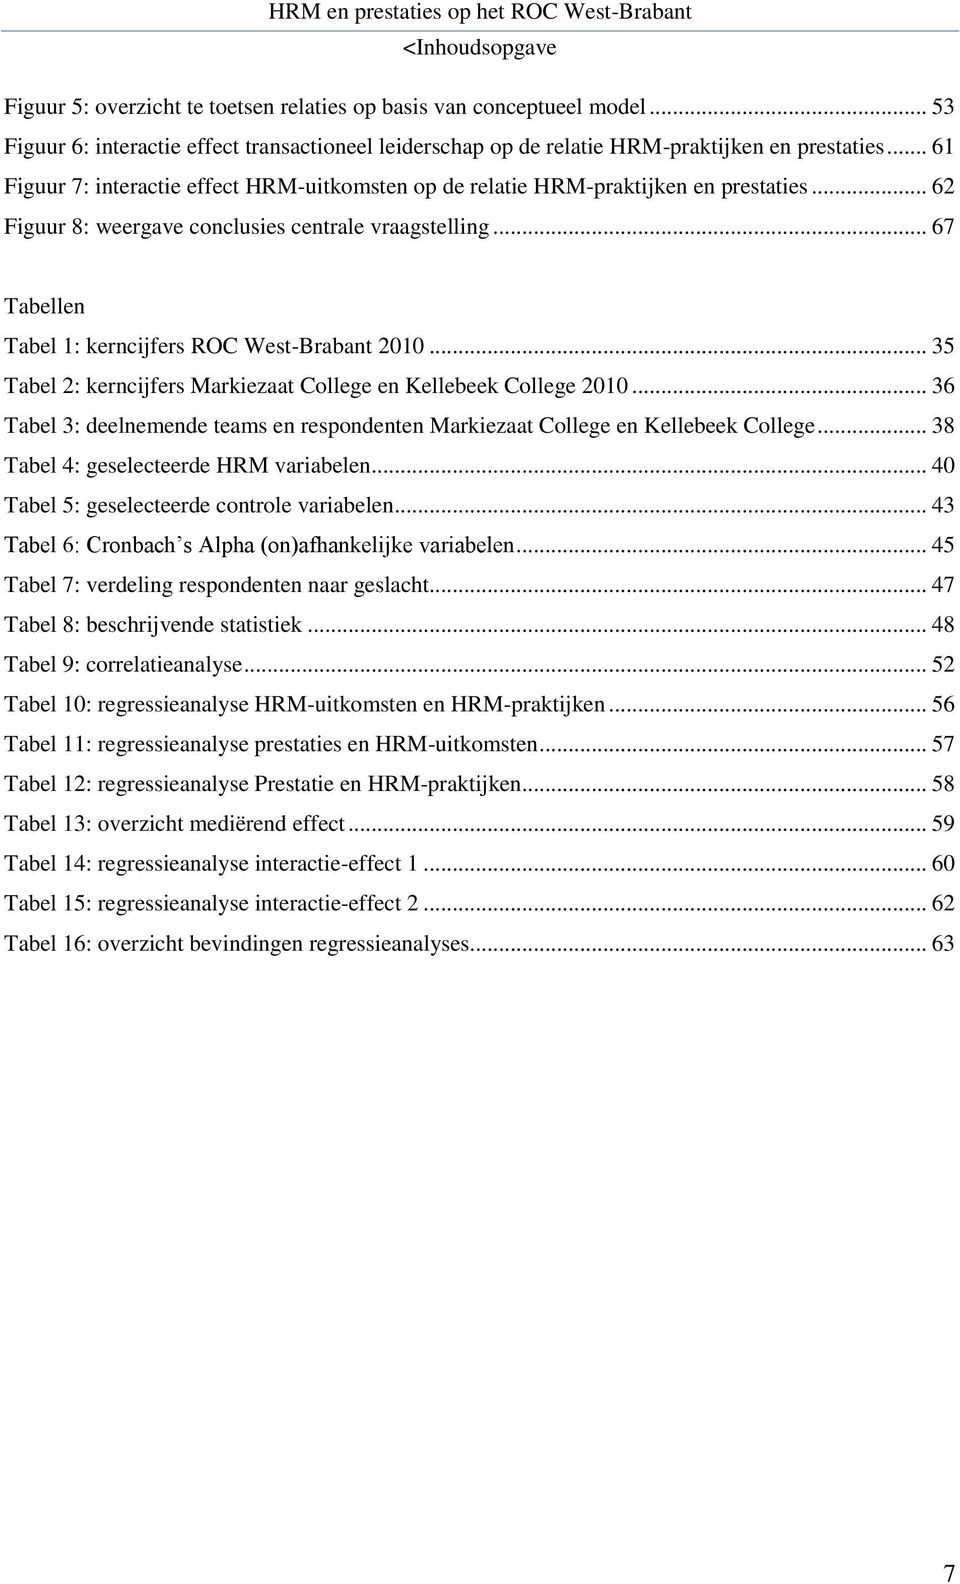 .. 67 Tabellen Tabel 1: kerncijfers ROC West-Brabant 2010... 35 Tabel 2: kerncijfers Markiezaat College en Kellebeek College 2010.